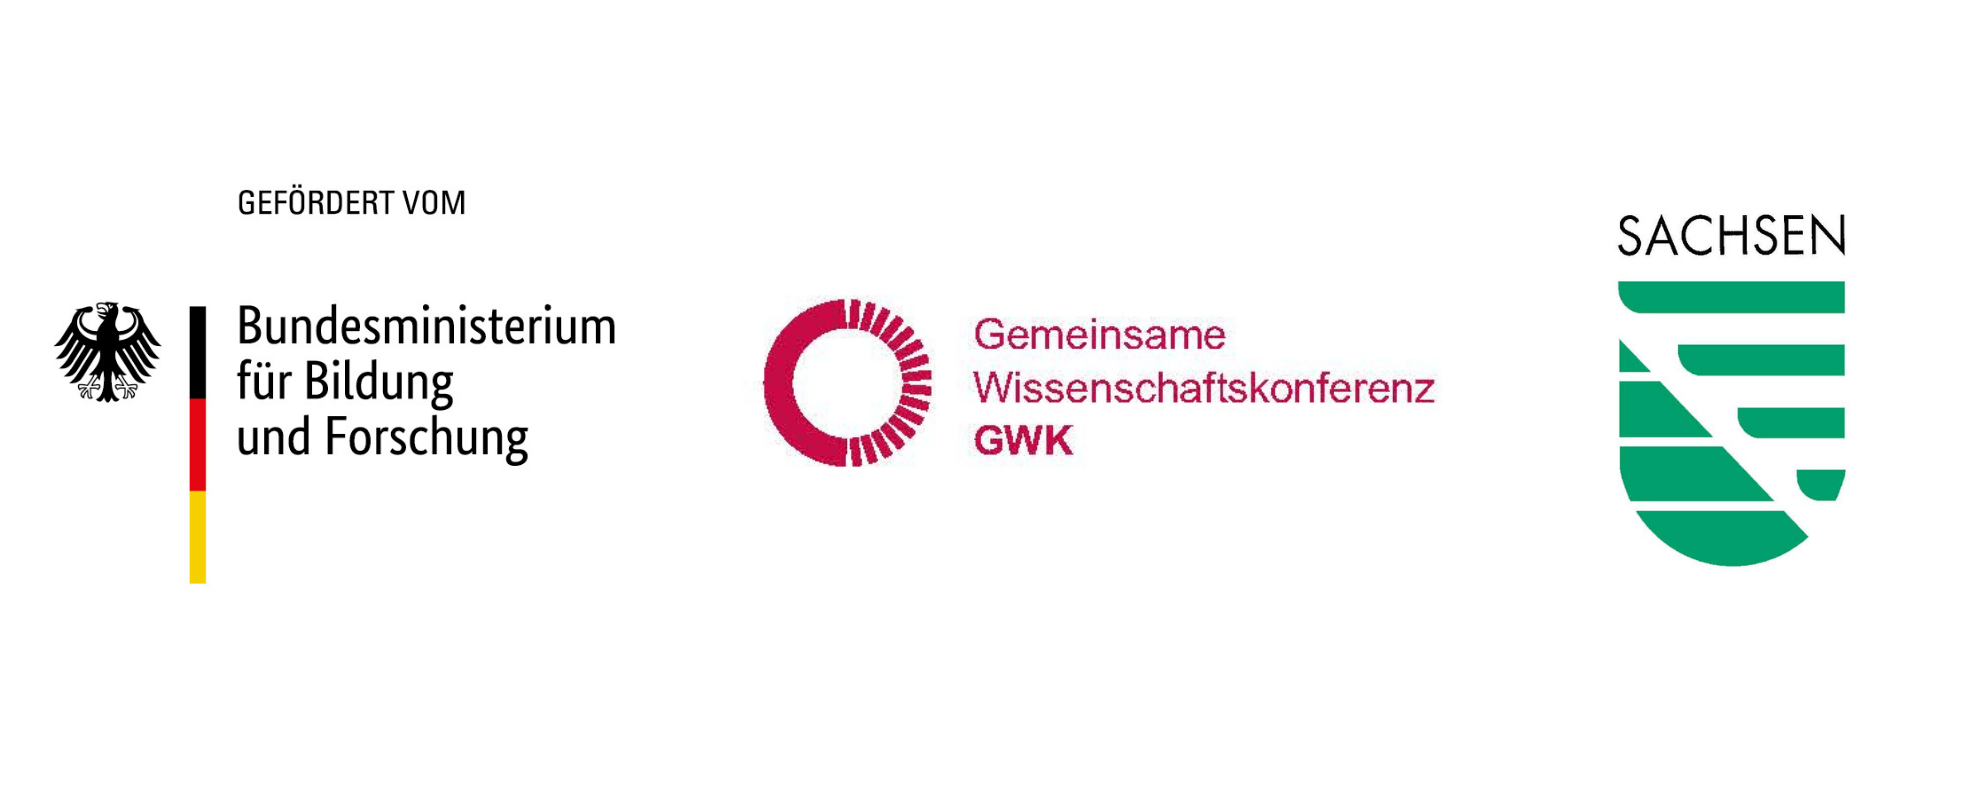 [Translate to English:] Logos des Bundesministeriums für Bildung und Forschung, der gemeinsamen Wissenschaftskonferenz (GWK) und des Freistaates Sachsen